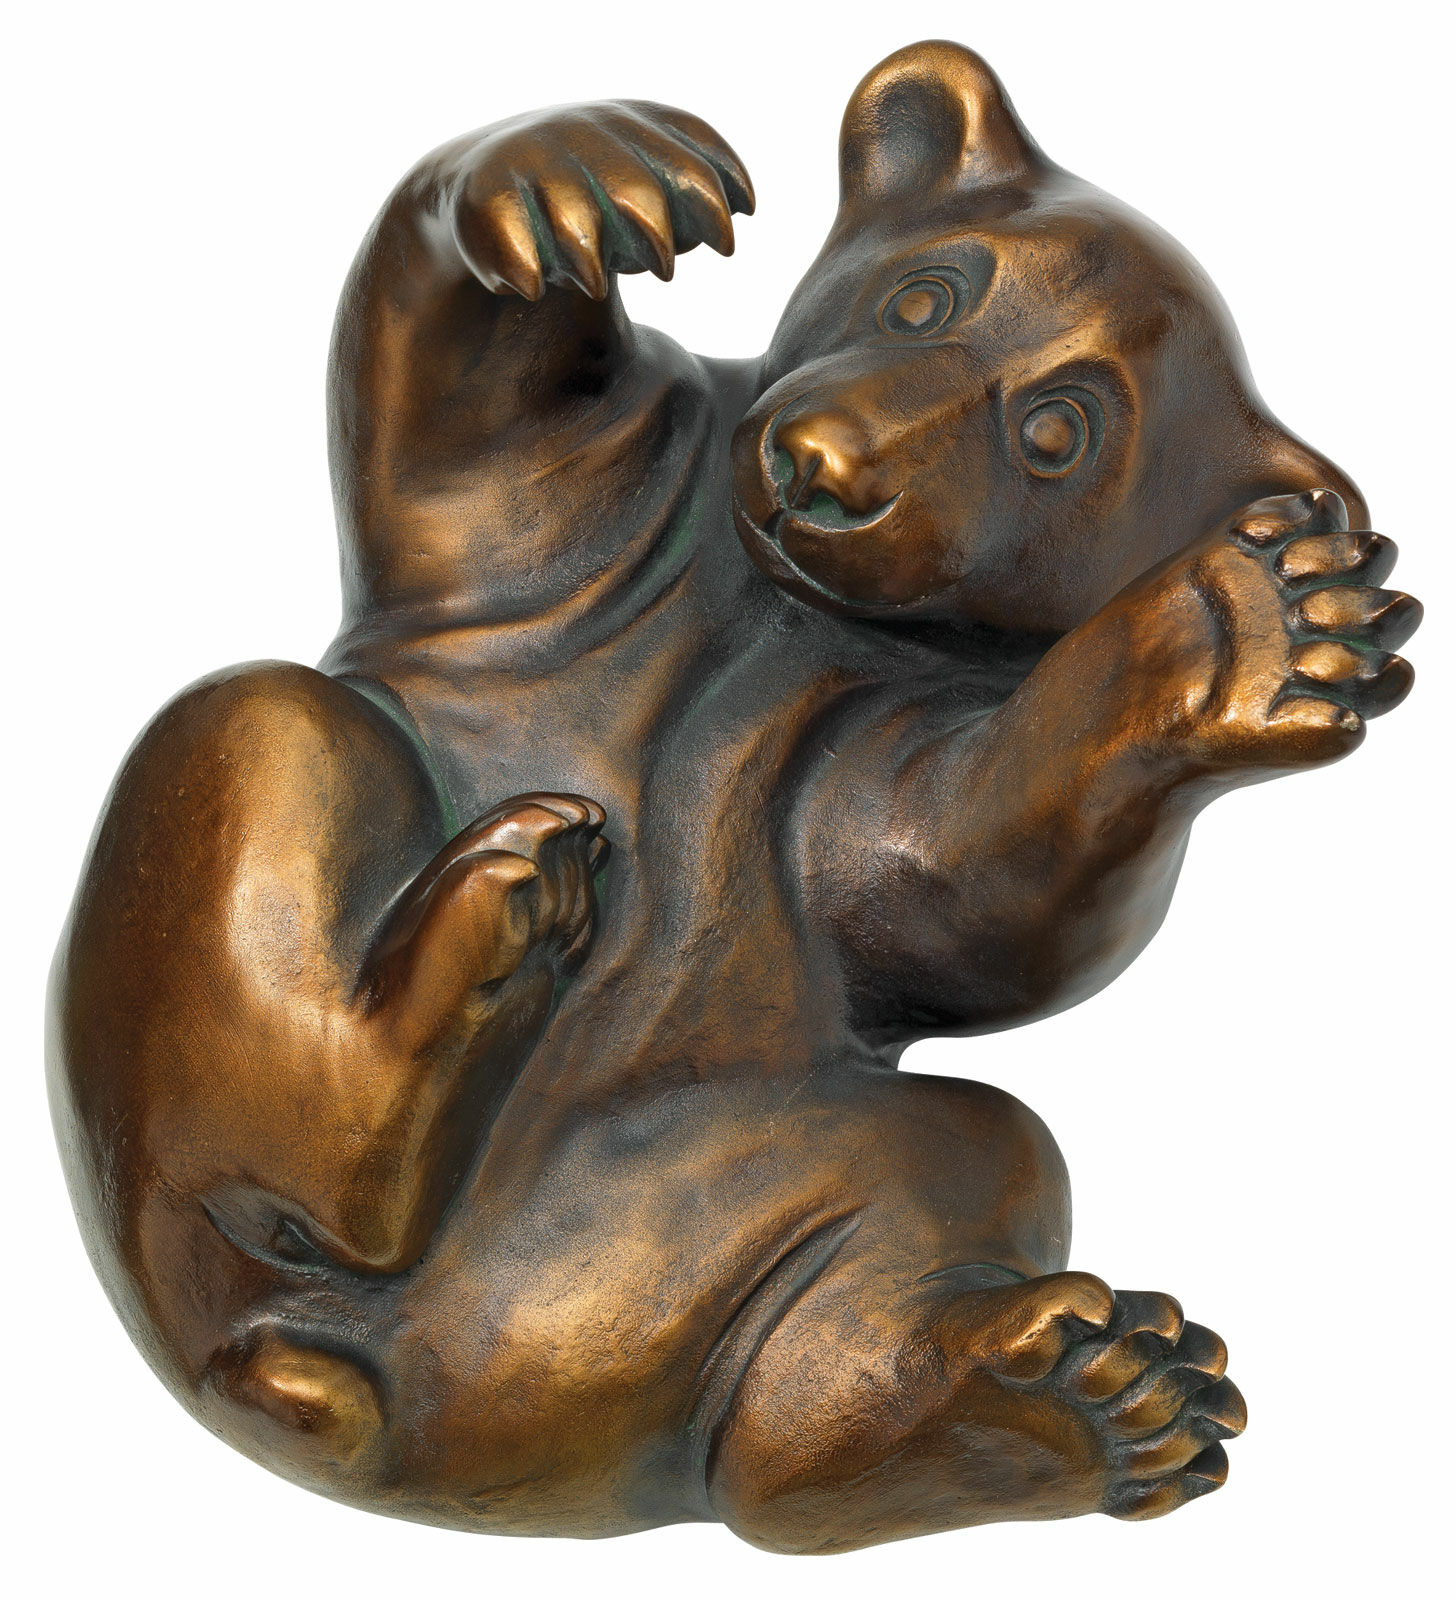 Sculpture "Bear Cub", bonded bronze version by Jagna Weber